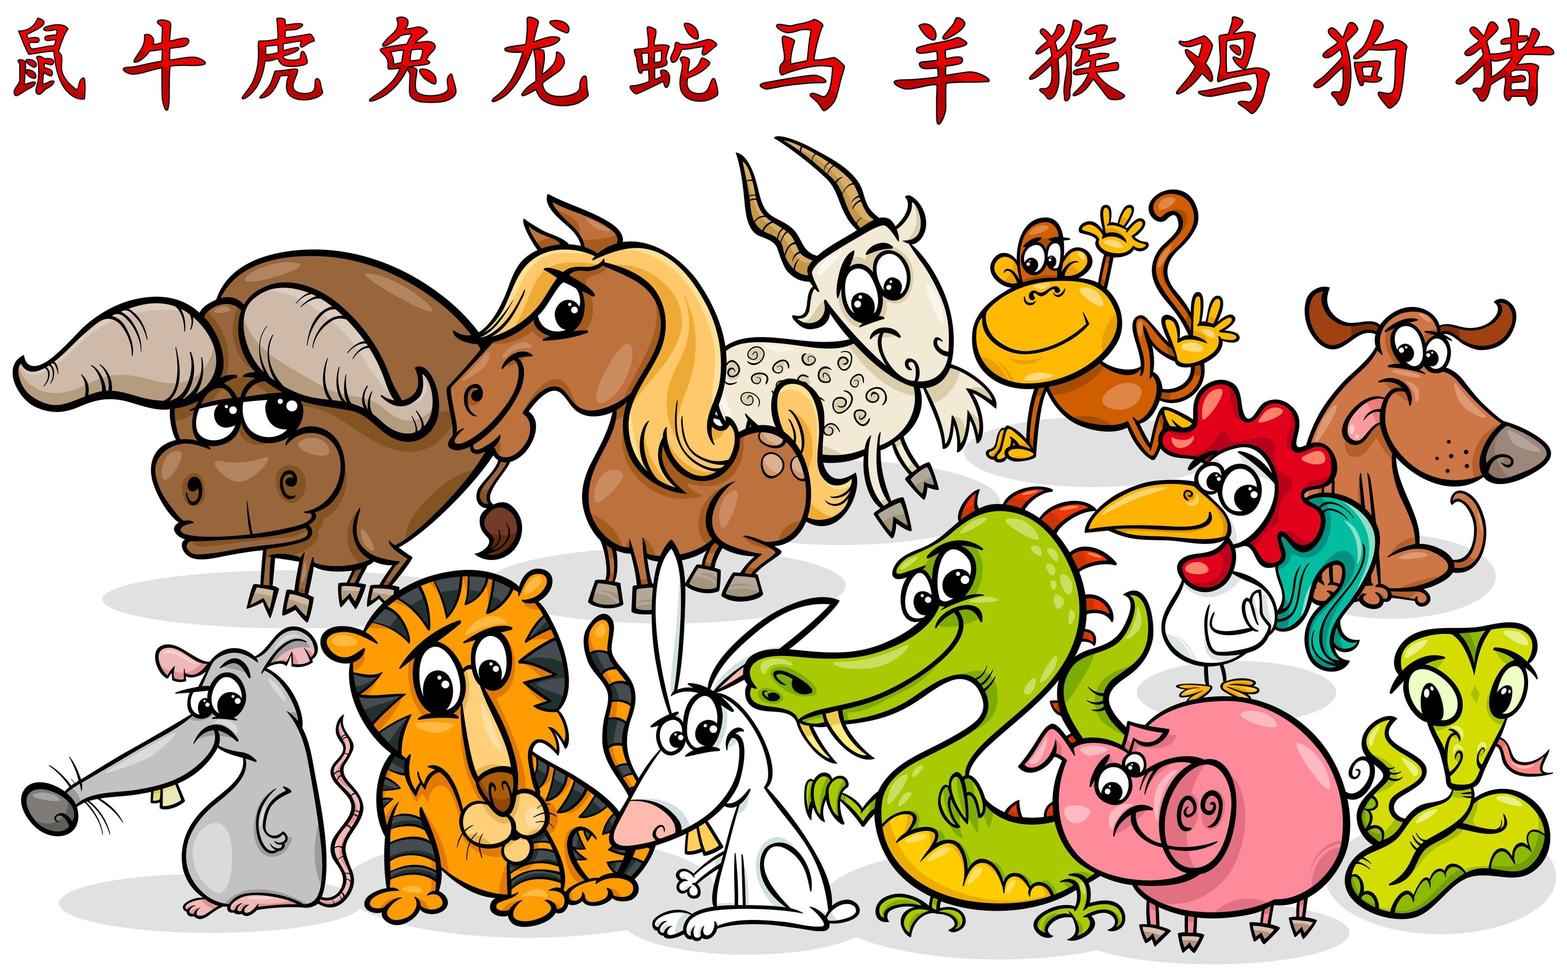 coleção de signos do horóscopo do zodíaco chinês dos desenhos animados vetor